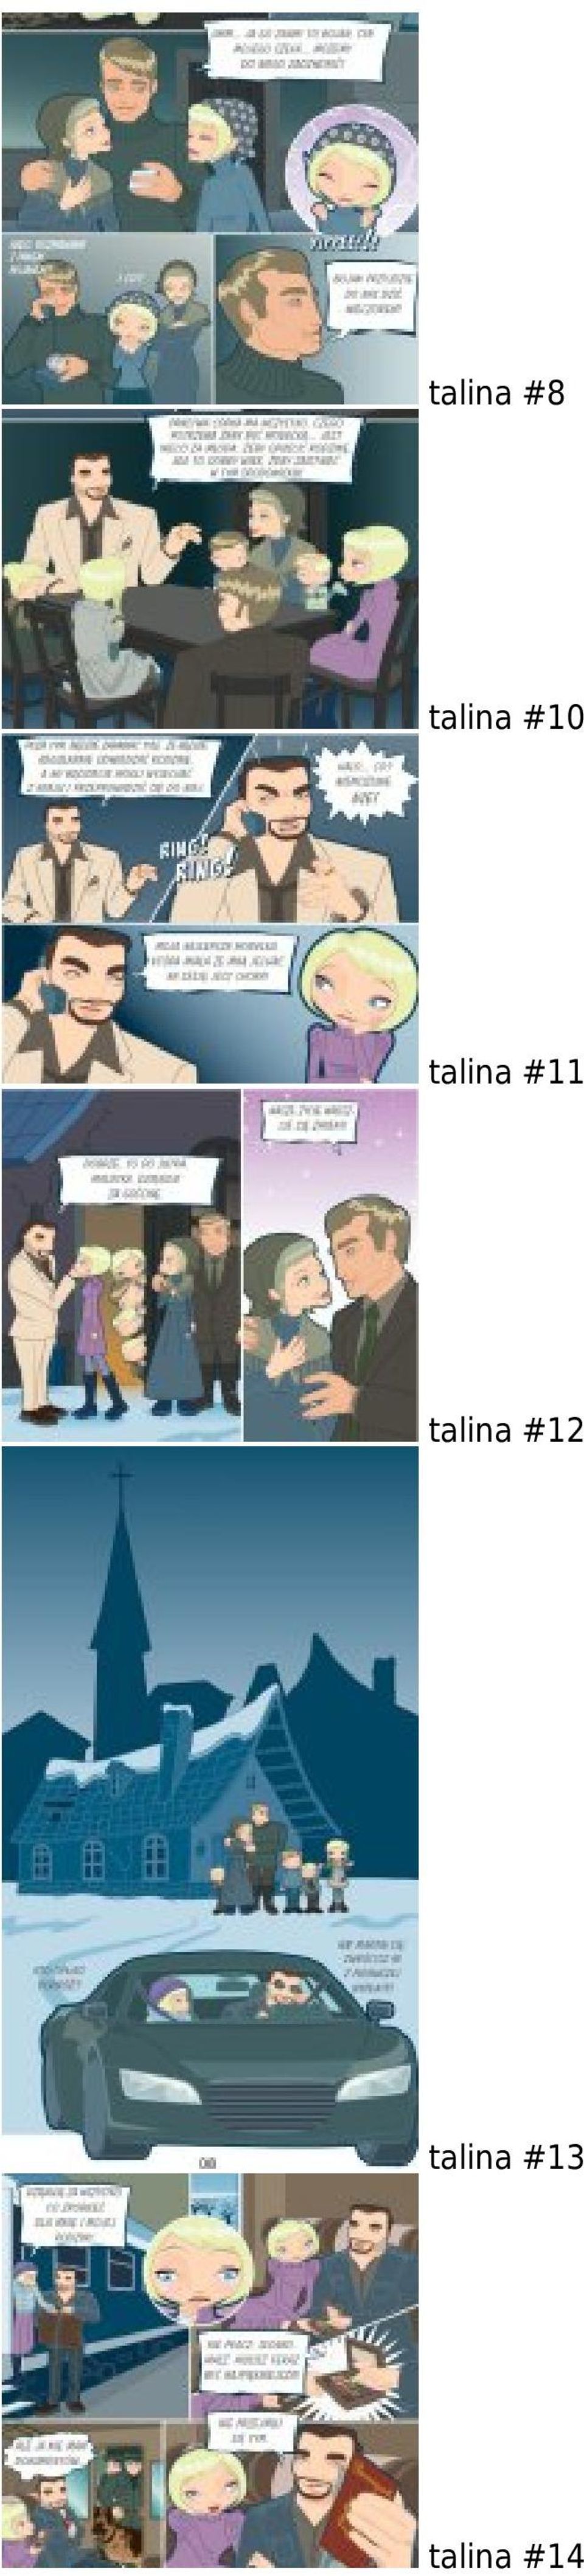 talina #11